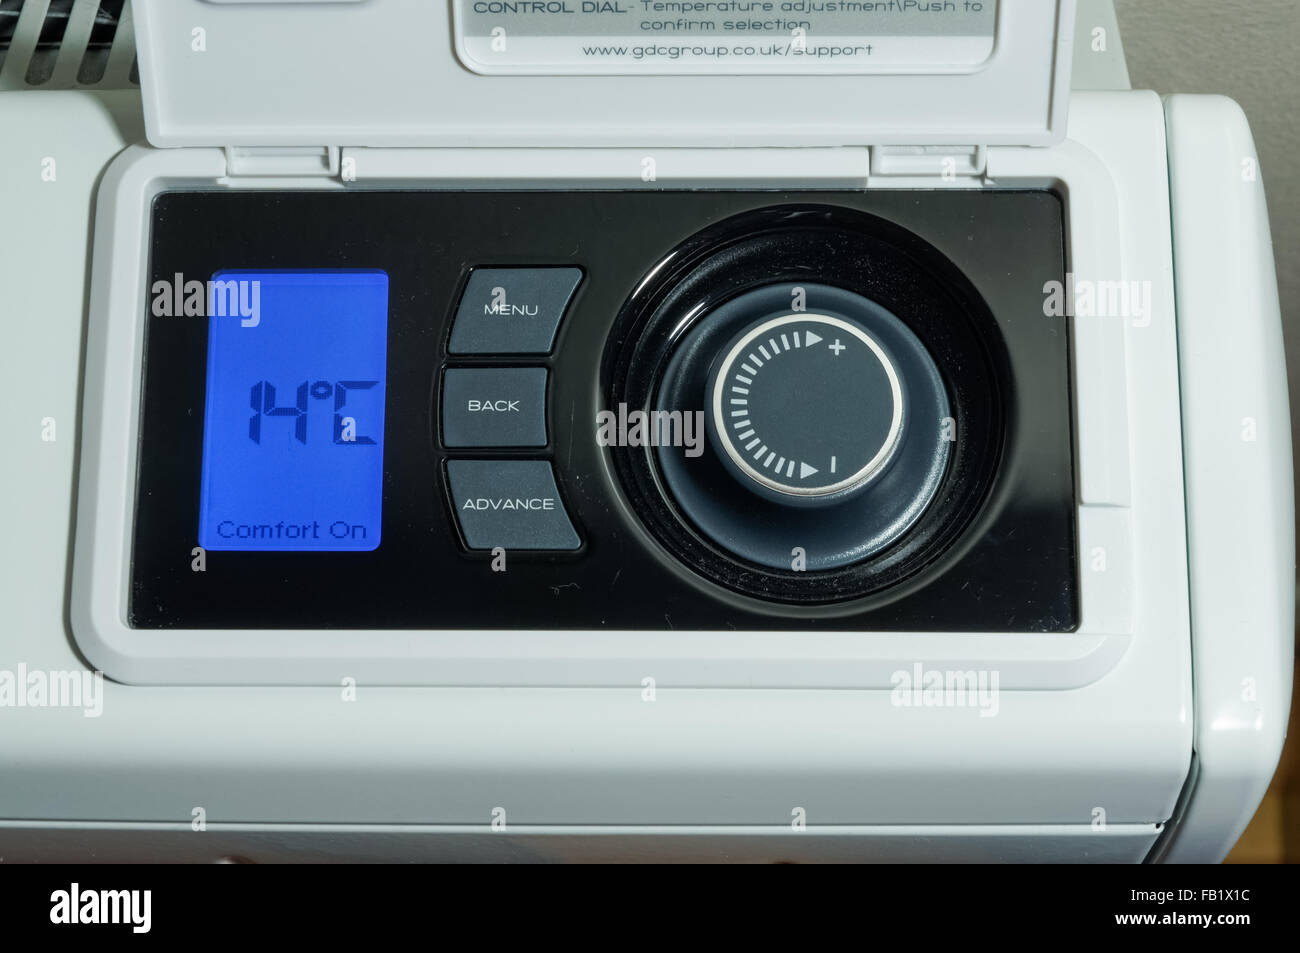 Chauffage central domestique, radiateur de stockage électrique, affichage LCD et panneau de commande de température réglé sur une température de 14 degrés celsius Banque D'Images